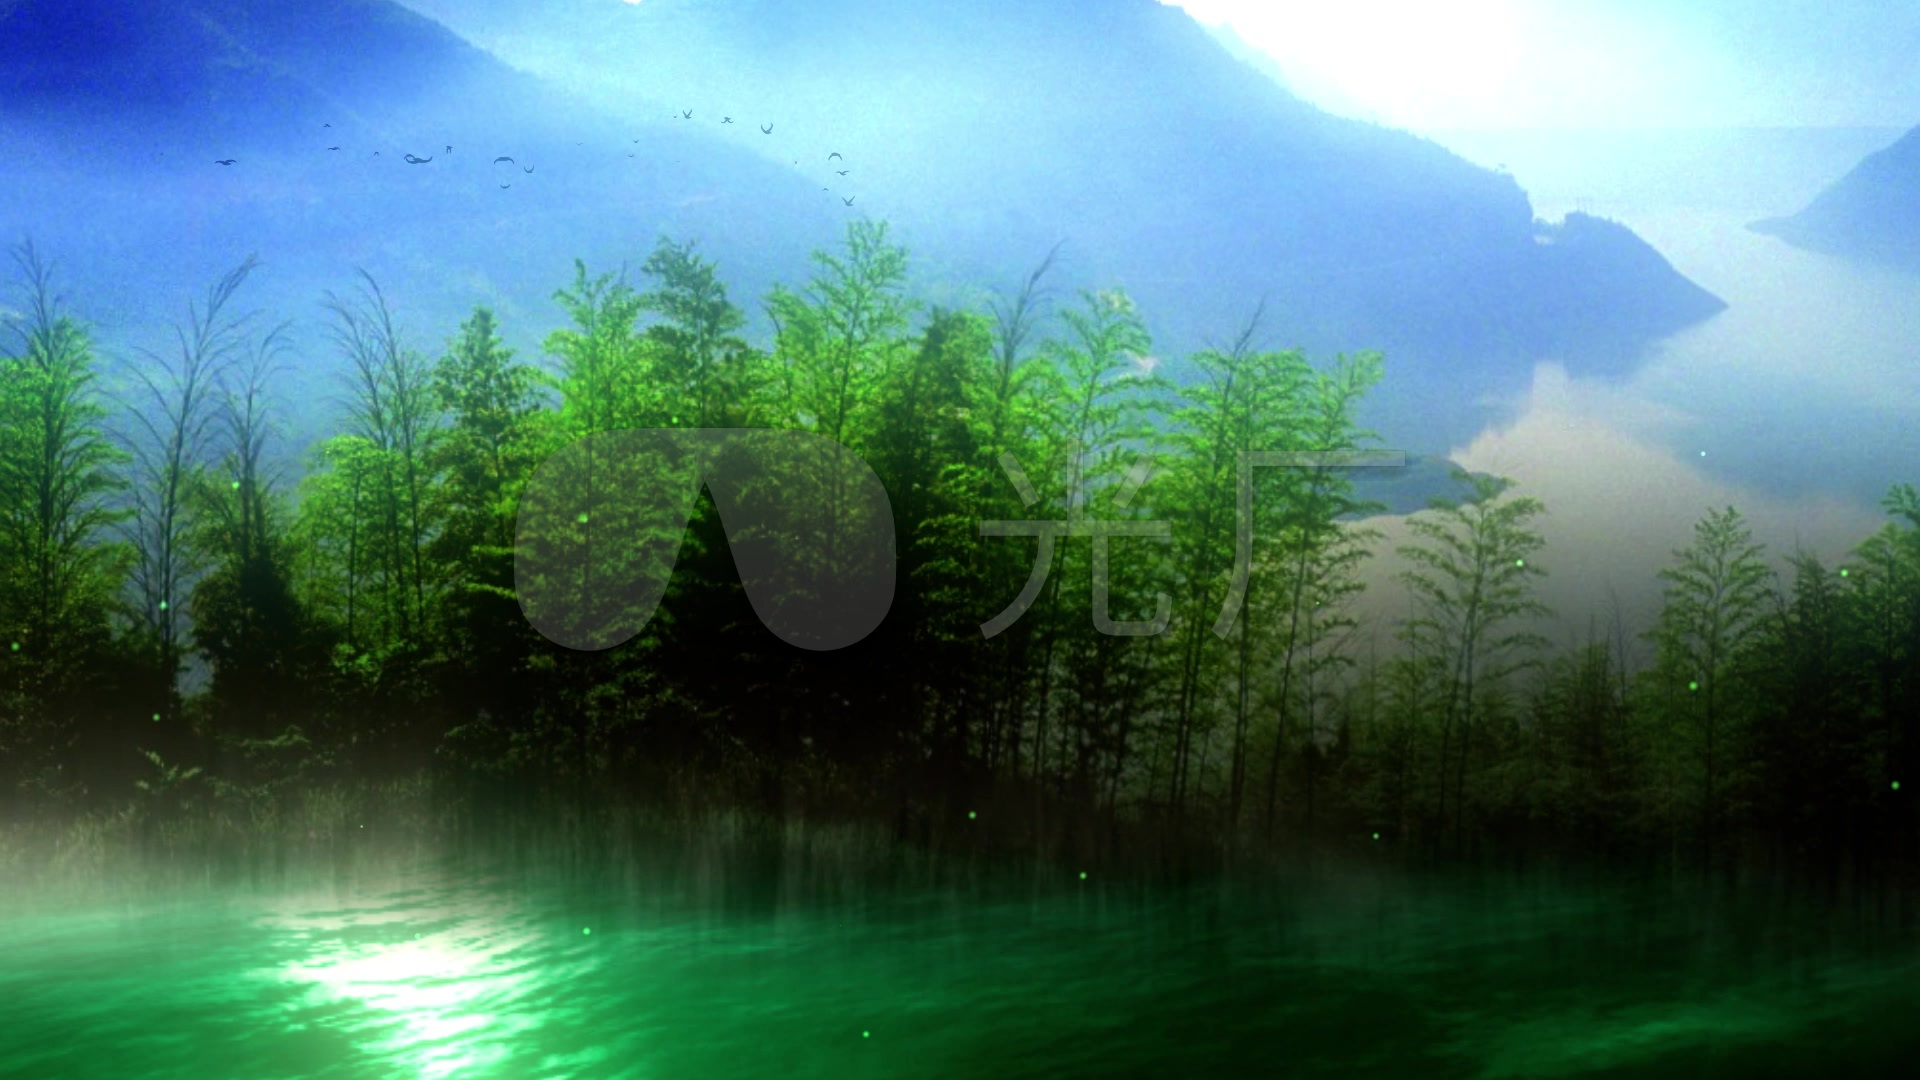 竹林意境山水风景画动态背景